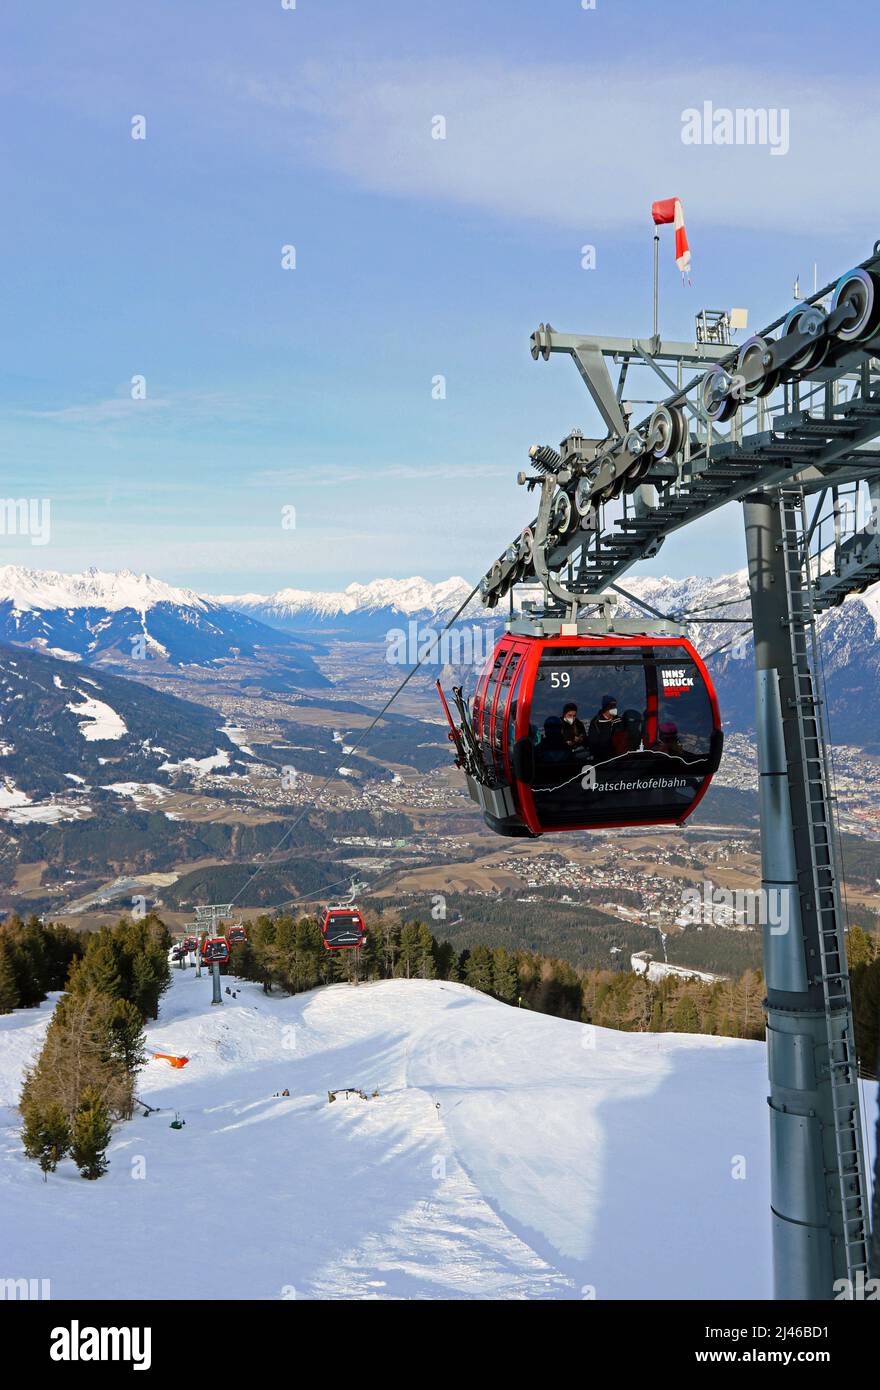 La funivia di Patscherkofelbahn si avvicina alla stazione di Bergstation; Innsbruck si estende lungo la valle dell'Inn sottostante; la catena montuosa Nordkette alle spalle Foto Stock